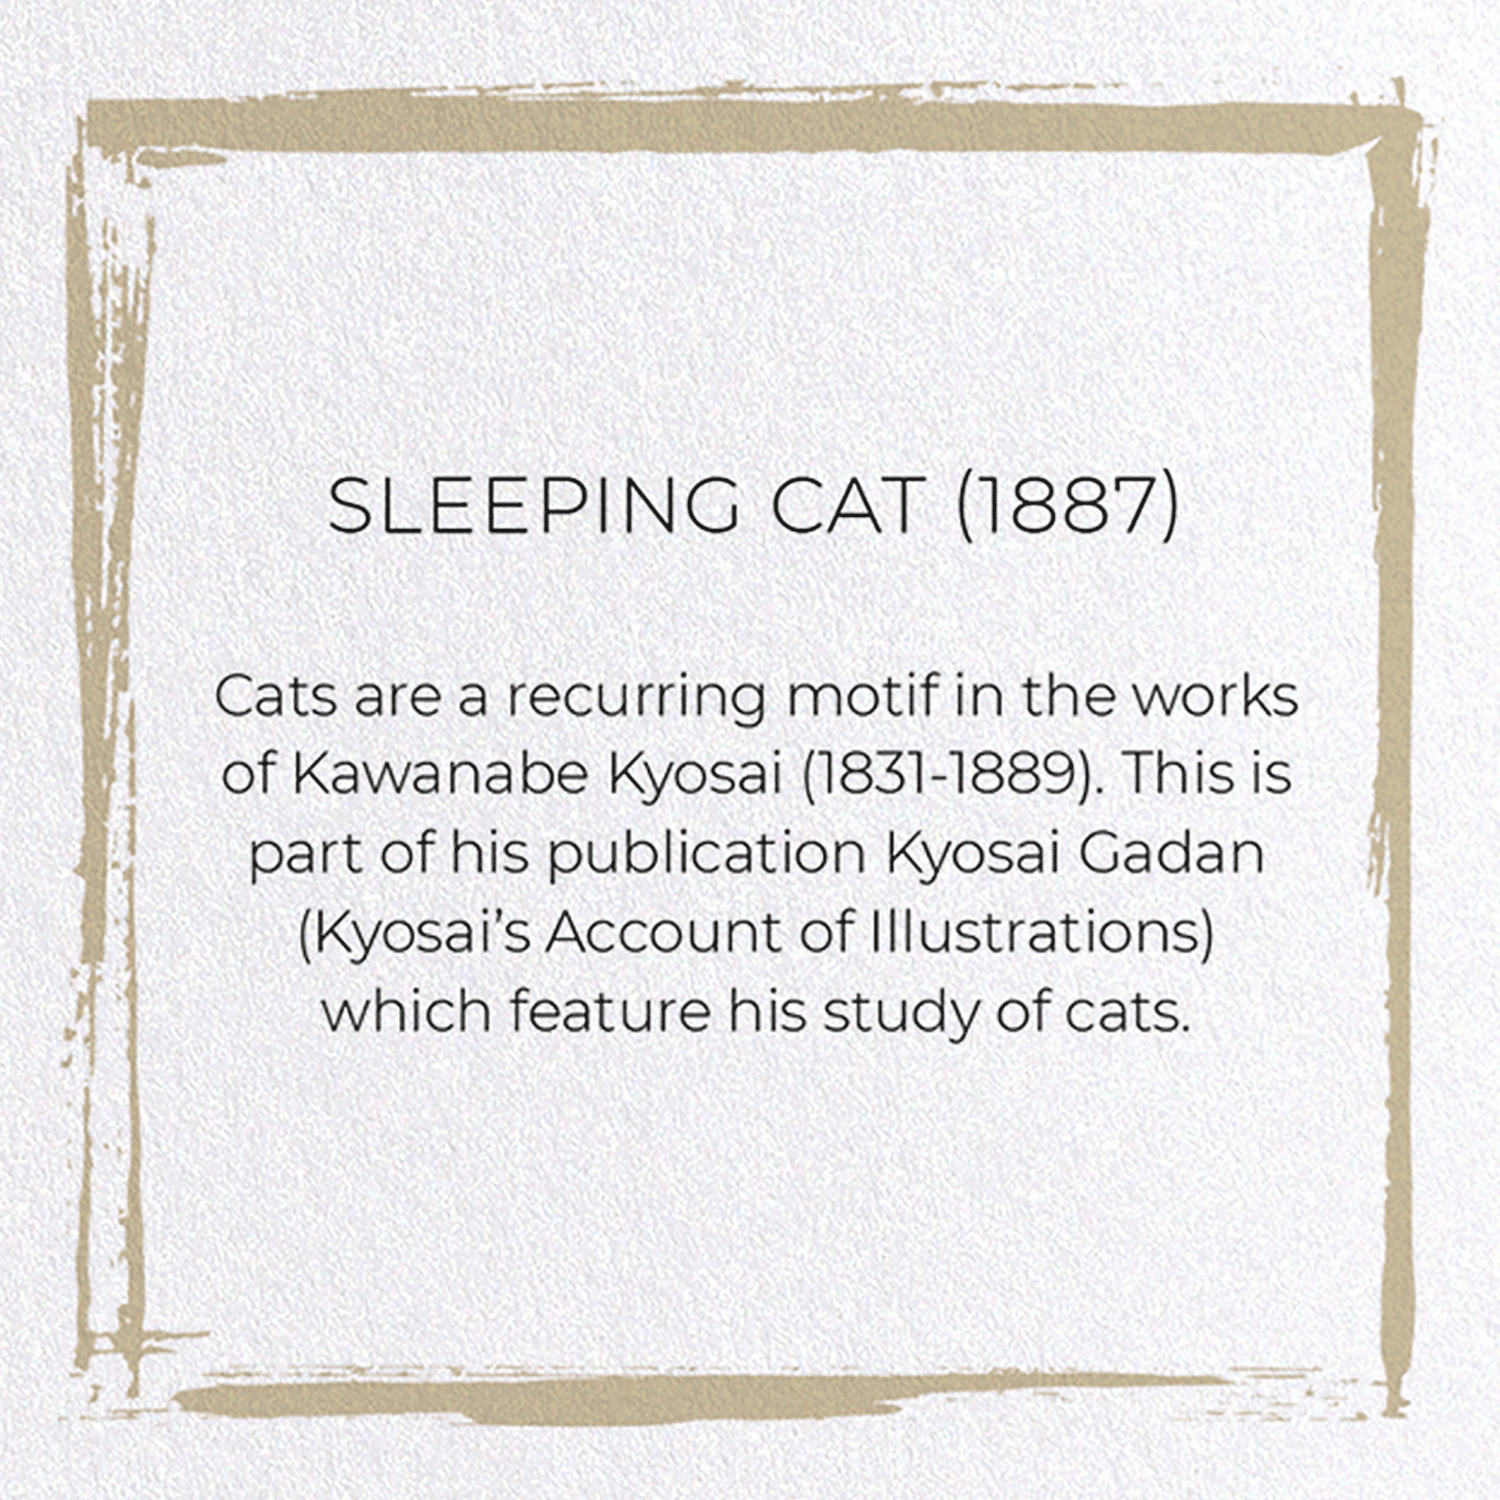 SLEEPING CAT (1887)